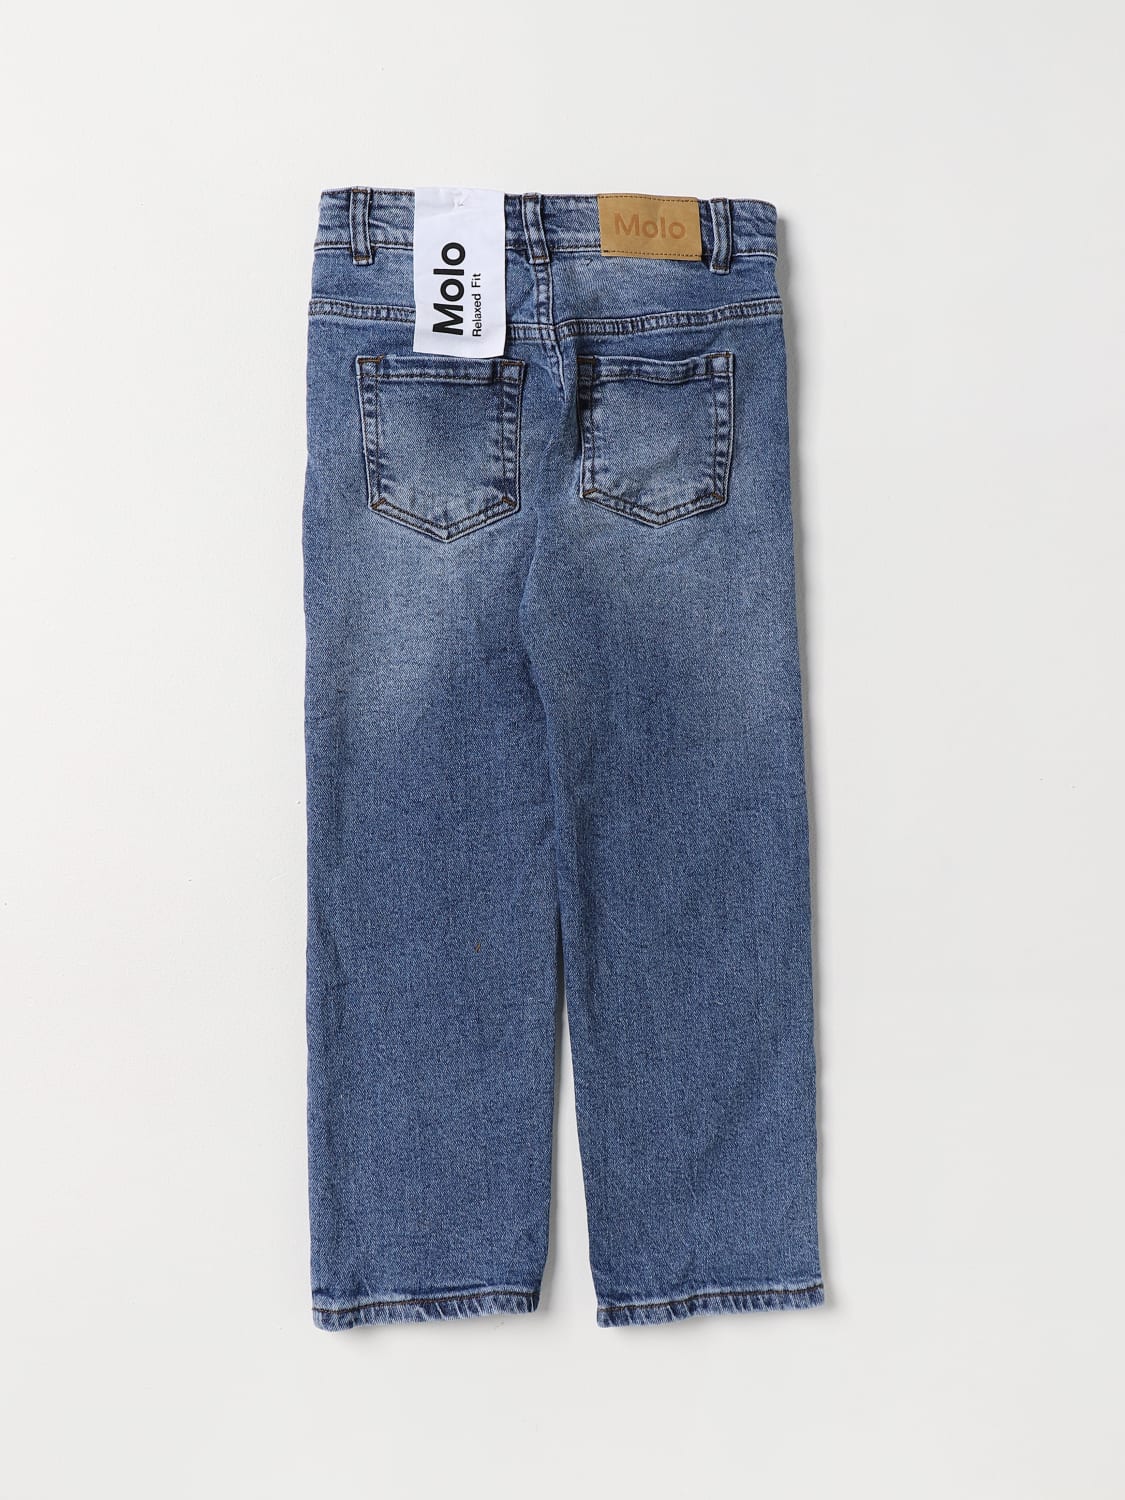 jeans for boys - Multicolor | Molo 1W23I107 online at GIGLIO.COM